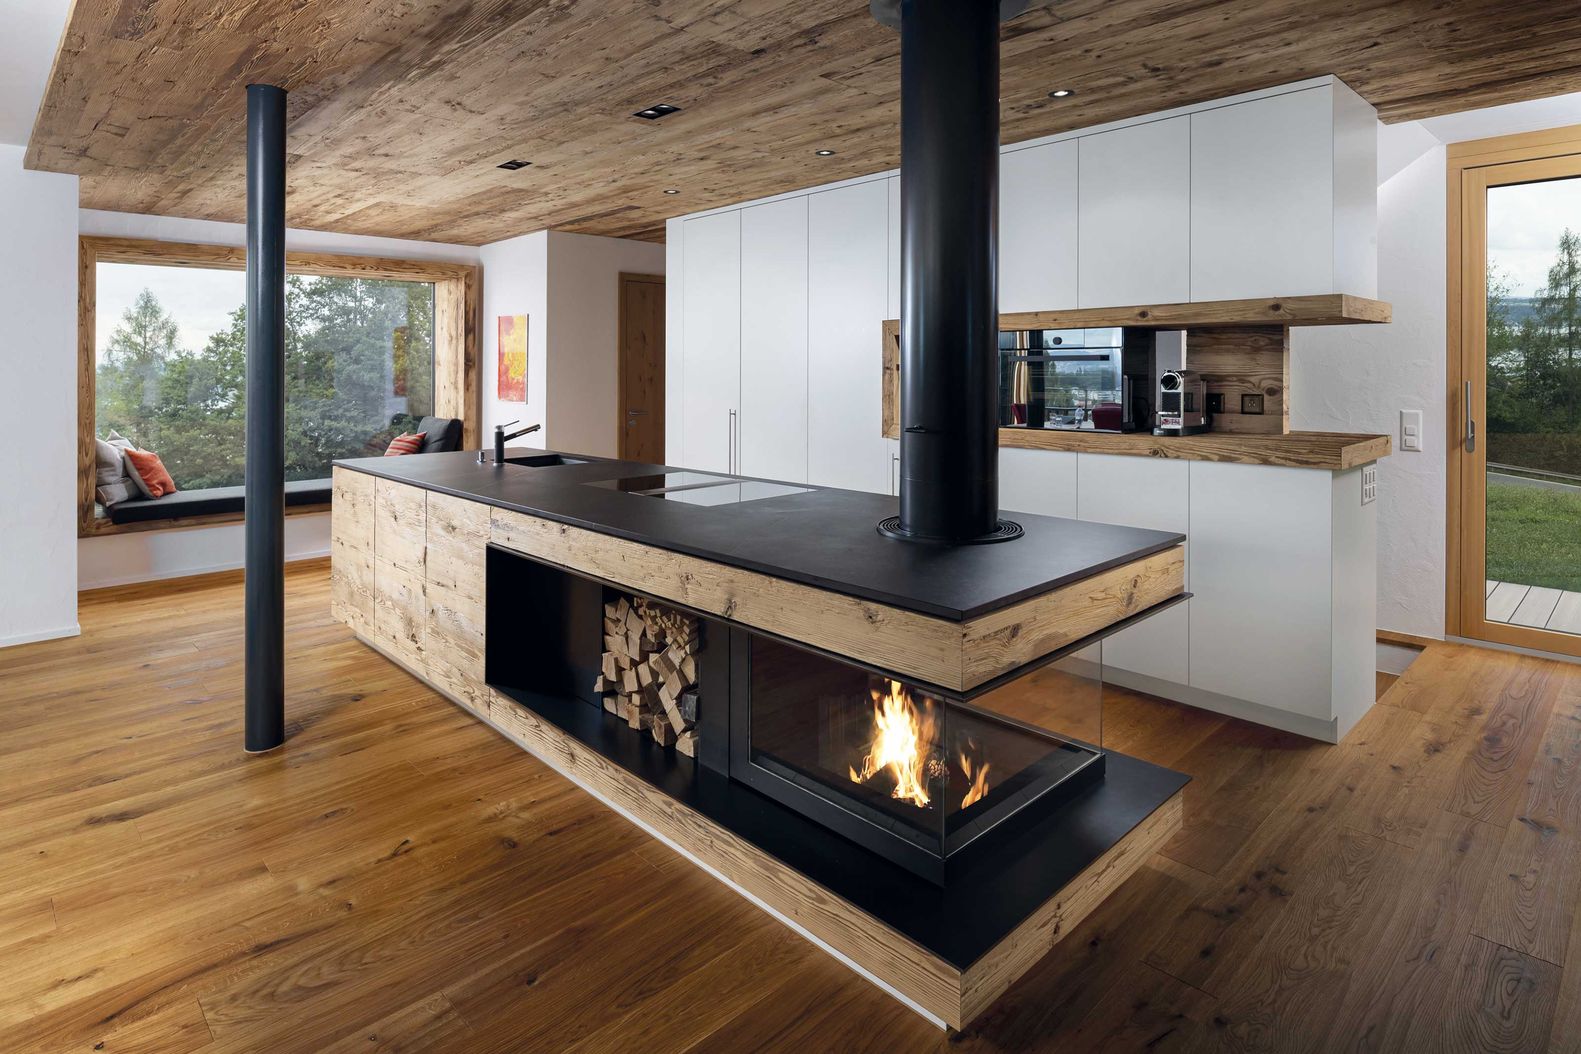 Die mit Massivholz verkleidete Feuerstelle ist im Wohnbereich platziert und doch so konzipiert, dass im Arbeitsbereich der Küche möglichst wenig Hitze entsteht. Wirth & Schmid AG.